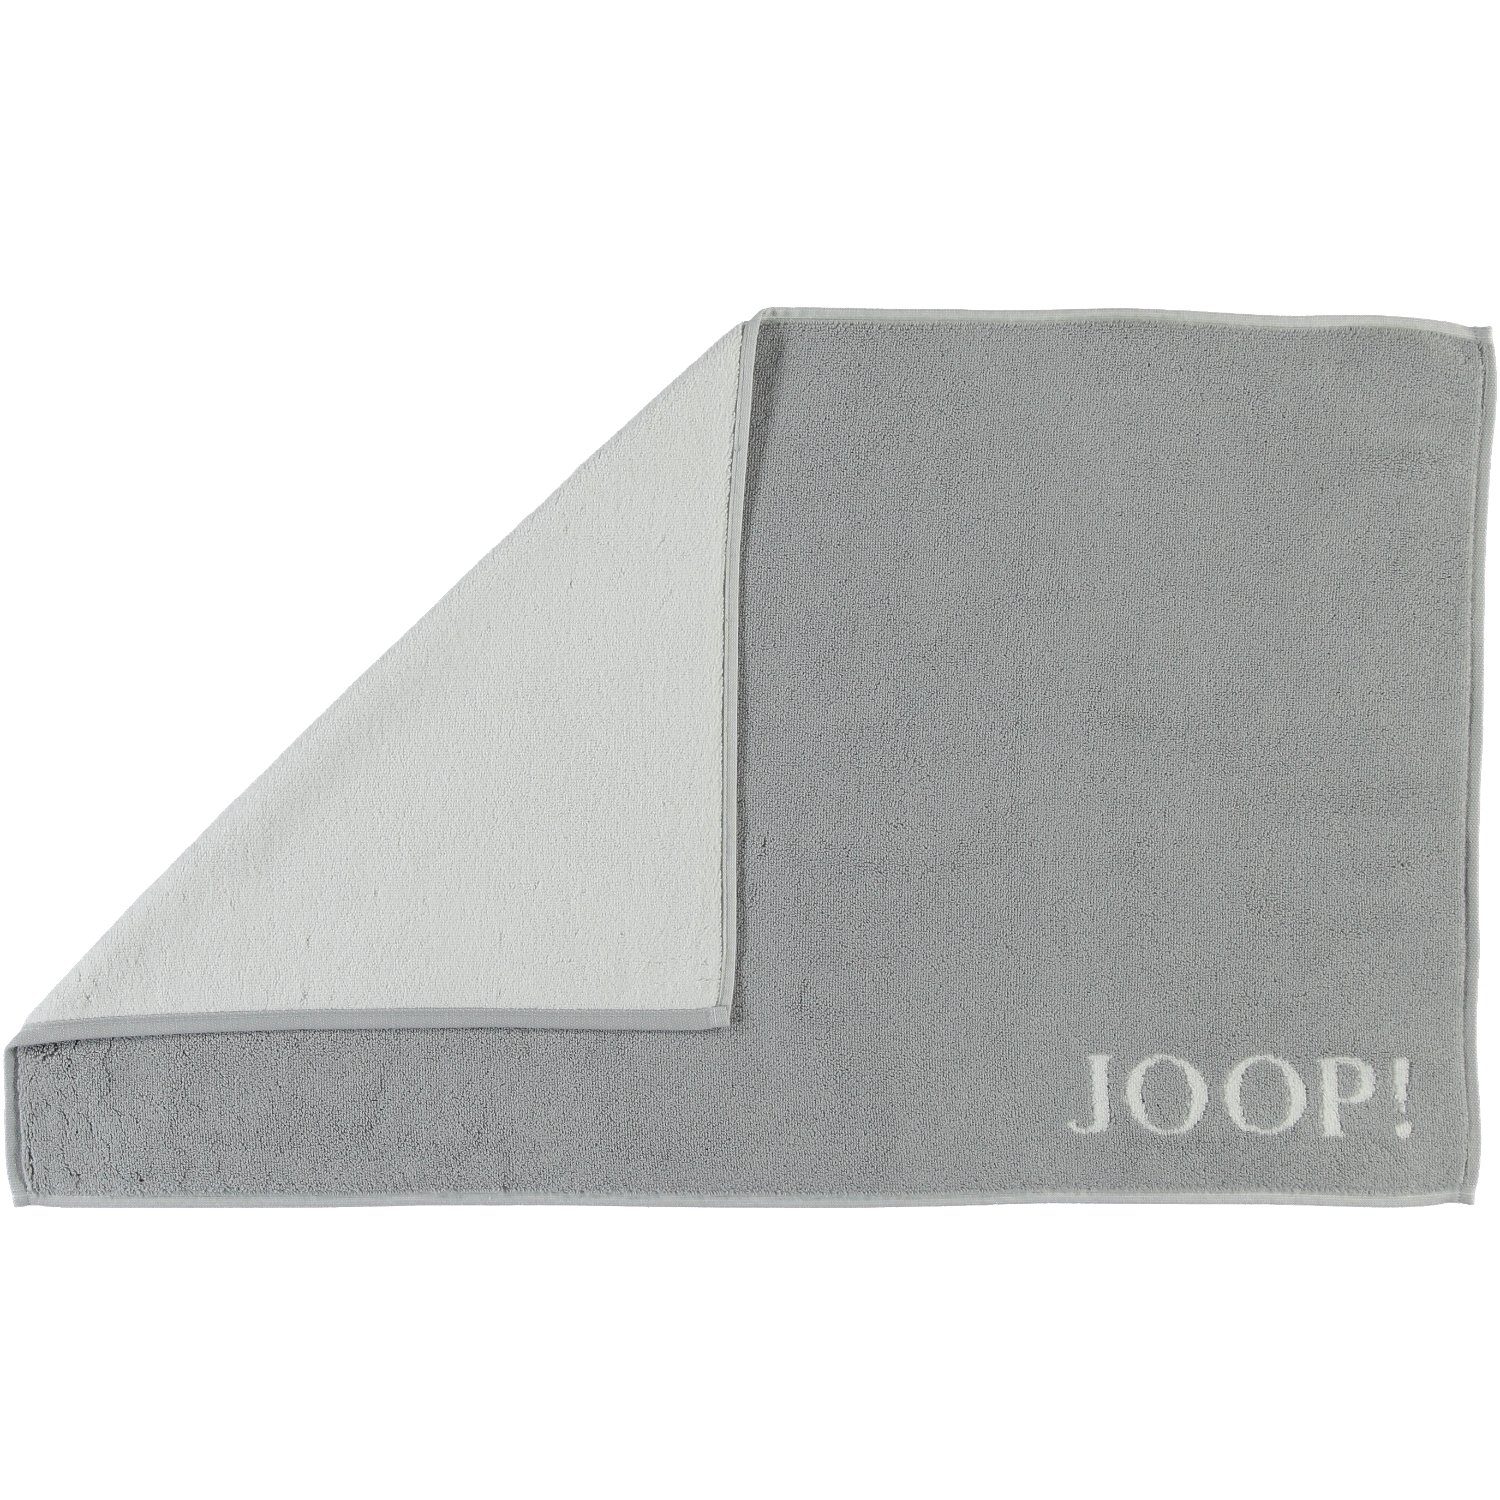 Joop!, Duschmatte Doubleface Classic 1600 Baumwolle Hellgrau 100%